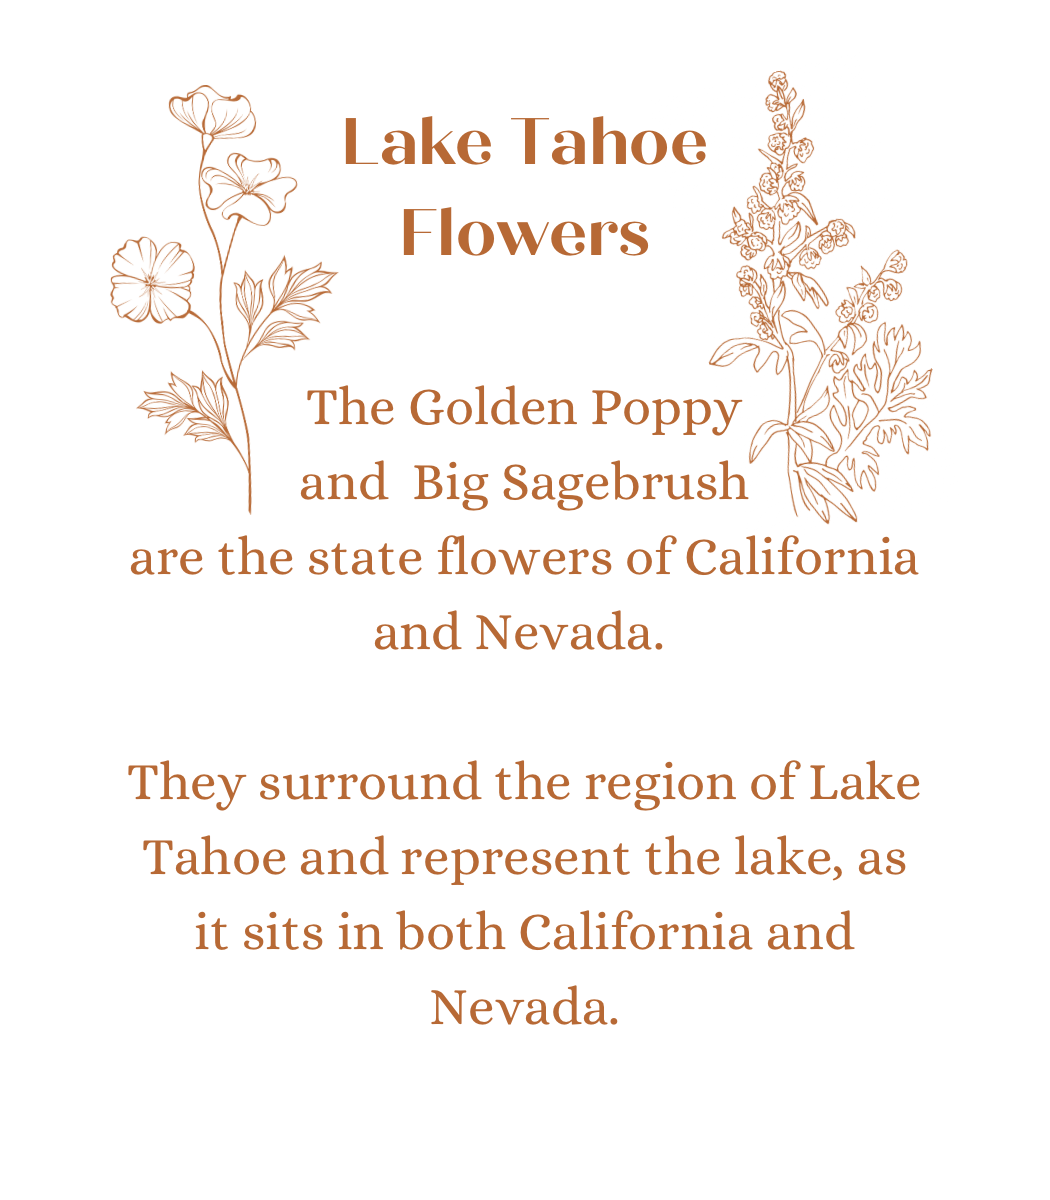 Lake Tahoe Flowers in Hera